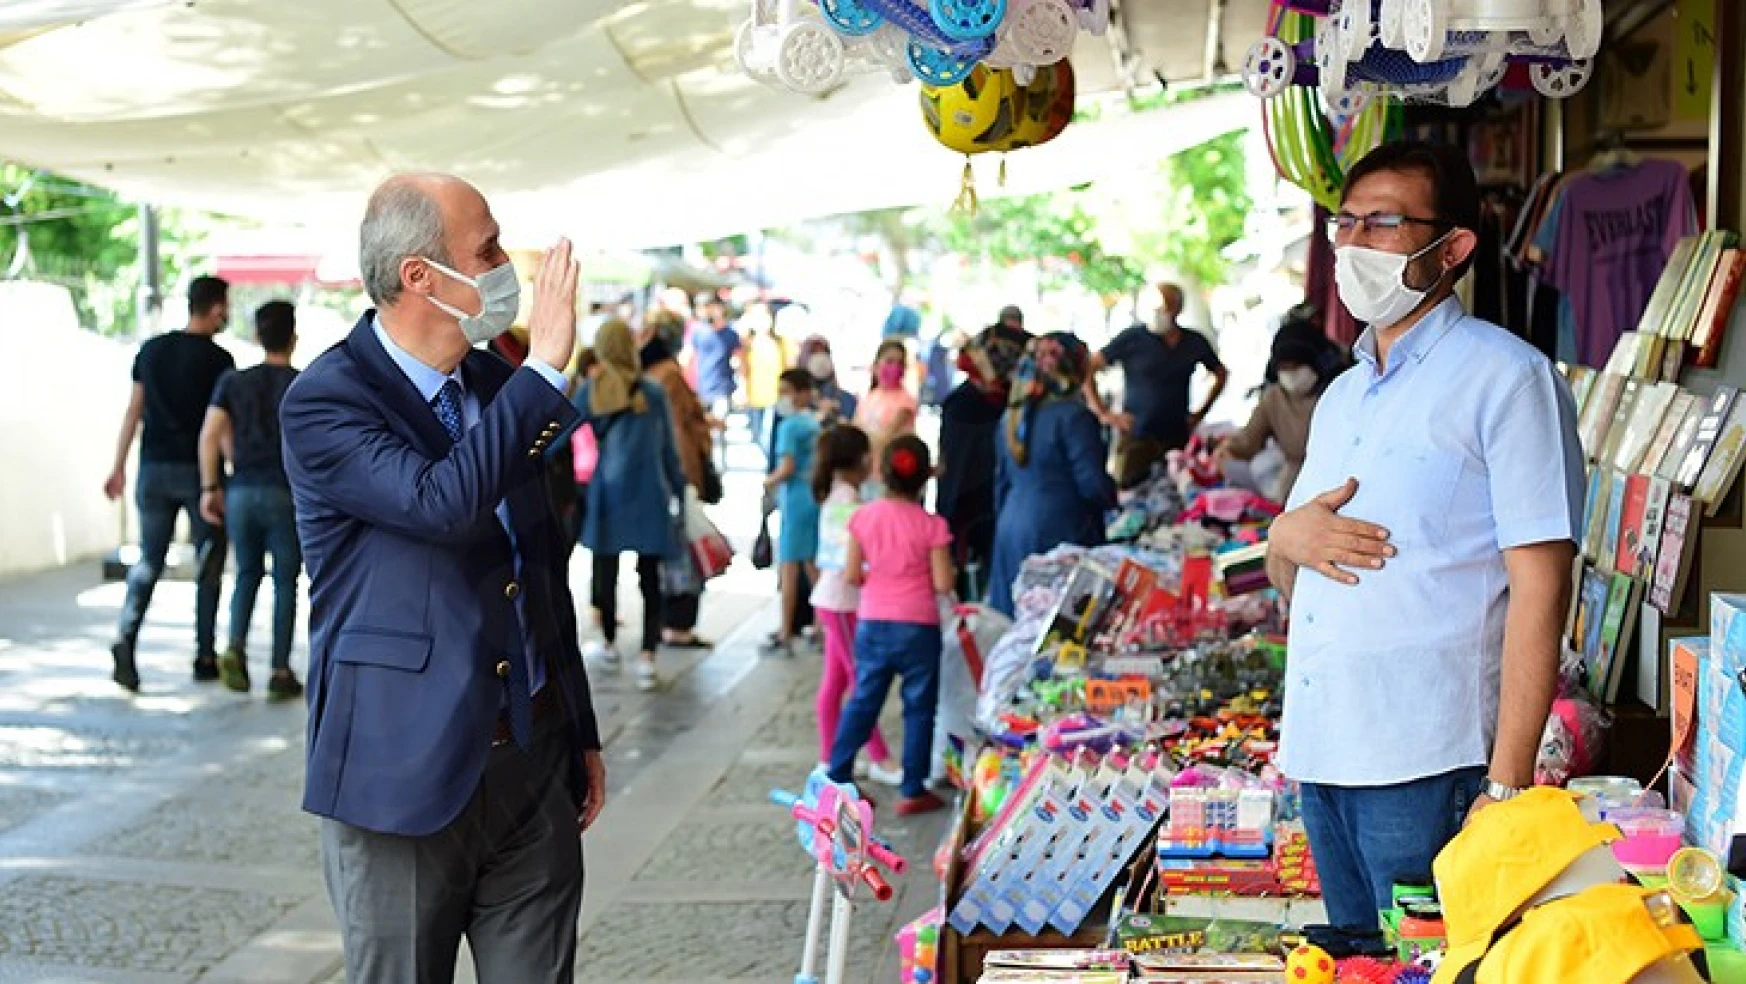 Dulkadiroğlu Belediye Başkanı Necati Okay: Esnafımızın her zaman yanındayız